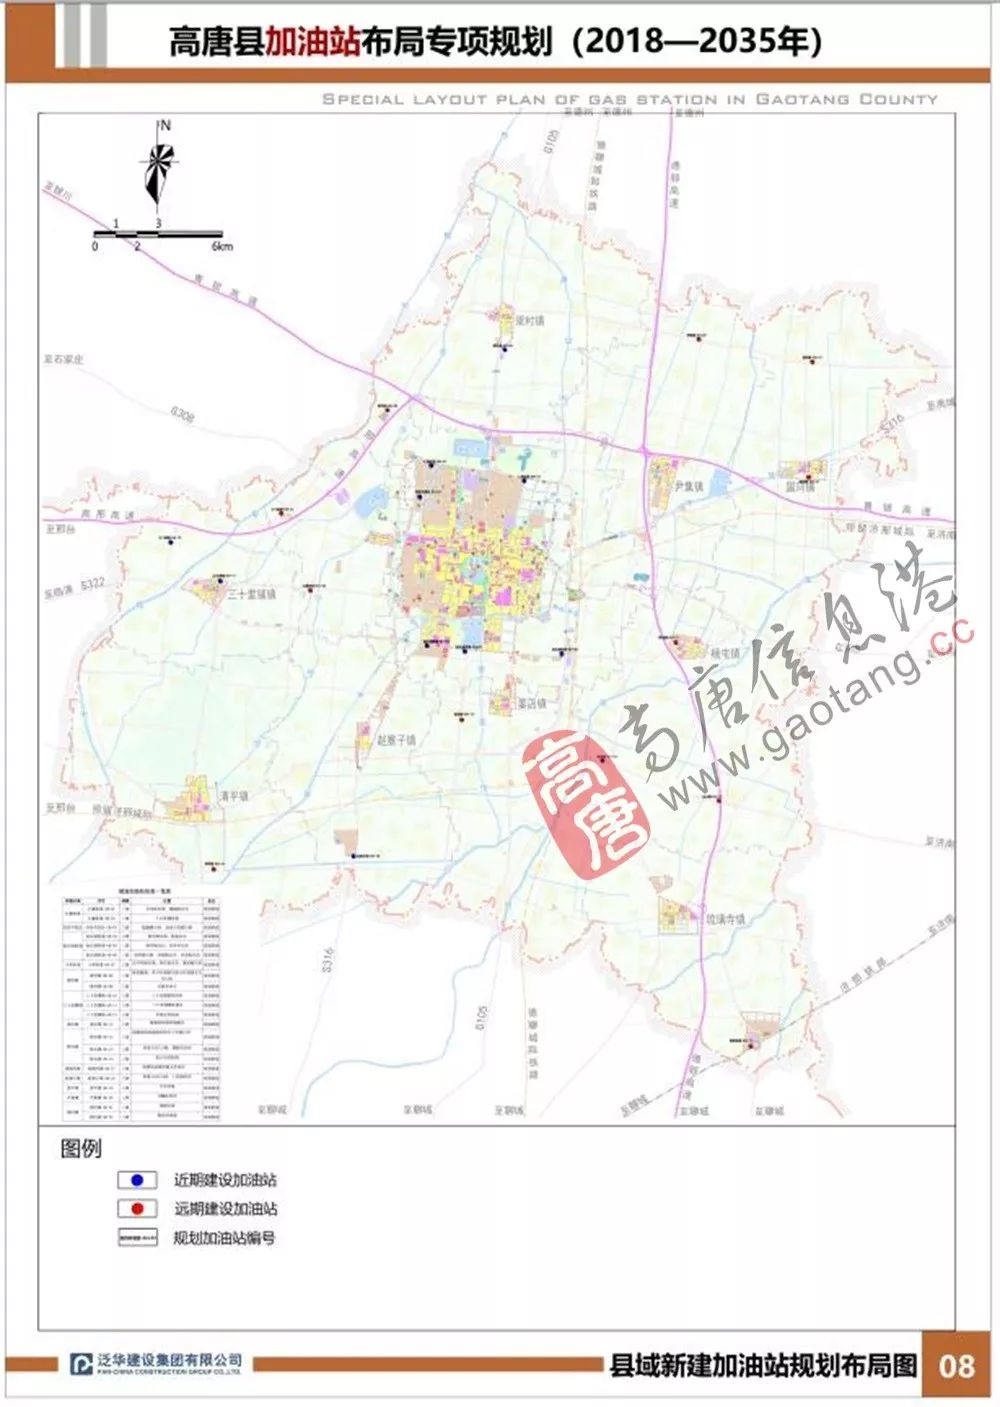 高唐县城区地图高清版图片